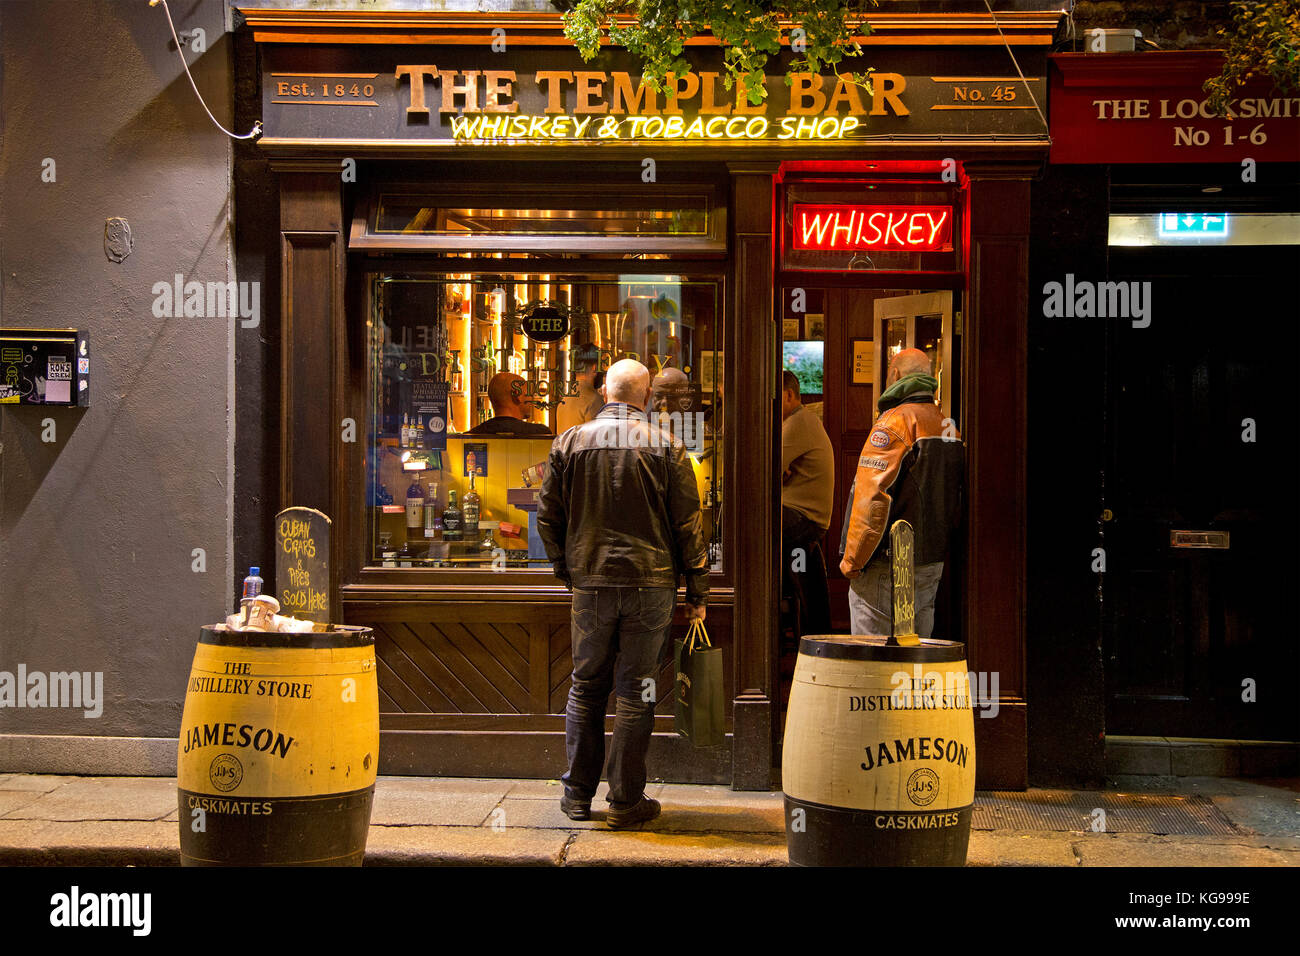 Whiskey & negozio di tabacchi, Temple Bar di Dublino, Irlanda | Whiskey & negozio di tabacchi, Temple Bar di Dublino, Irlanda Foto Stock